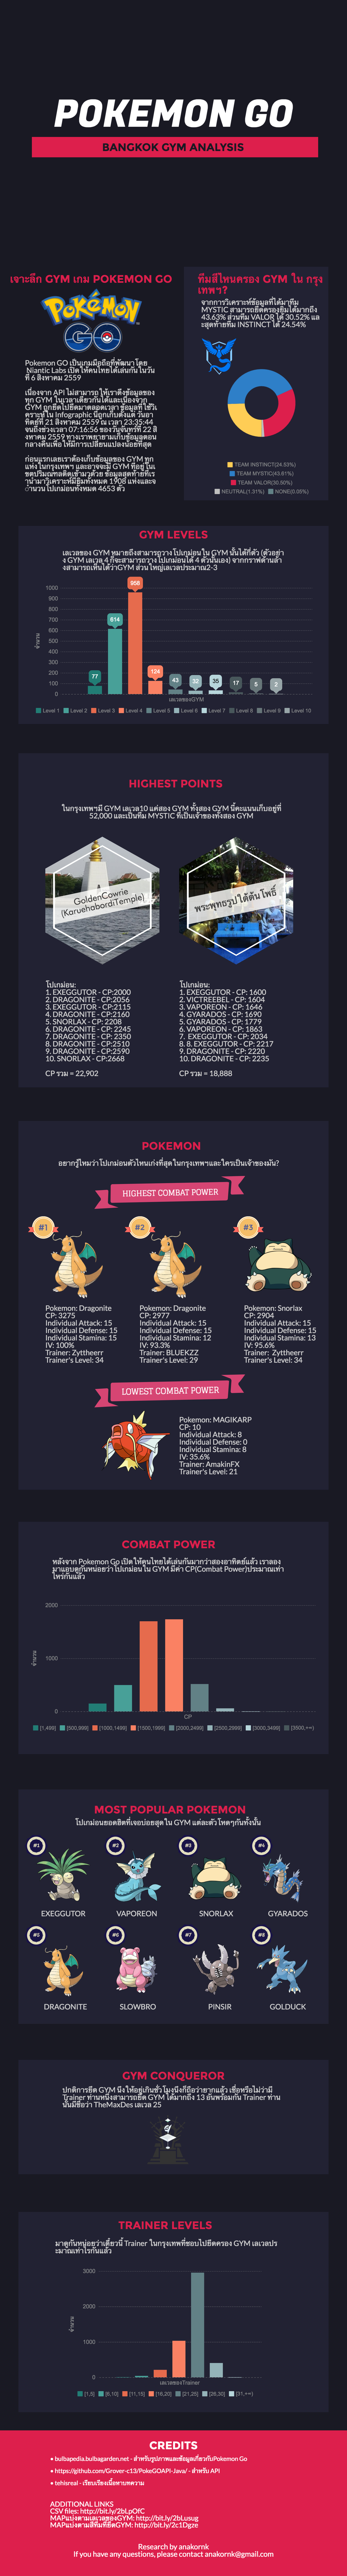 Pokemon Go Bangkok Gym Analysis